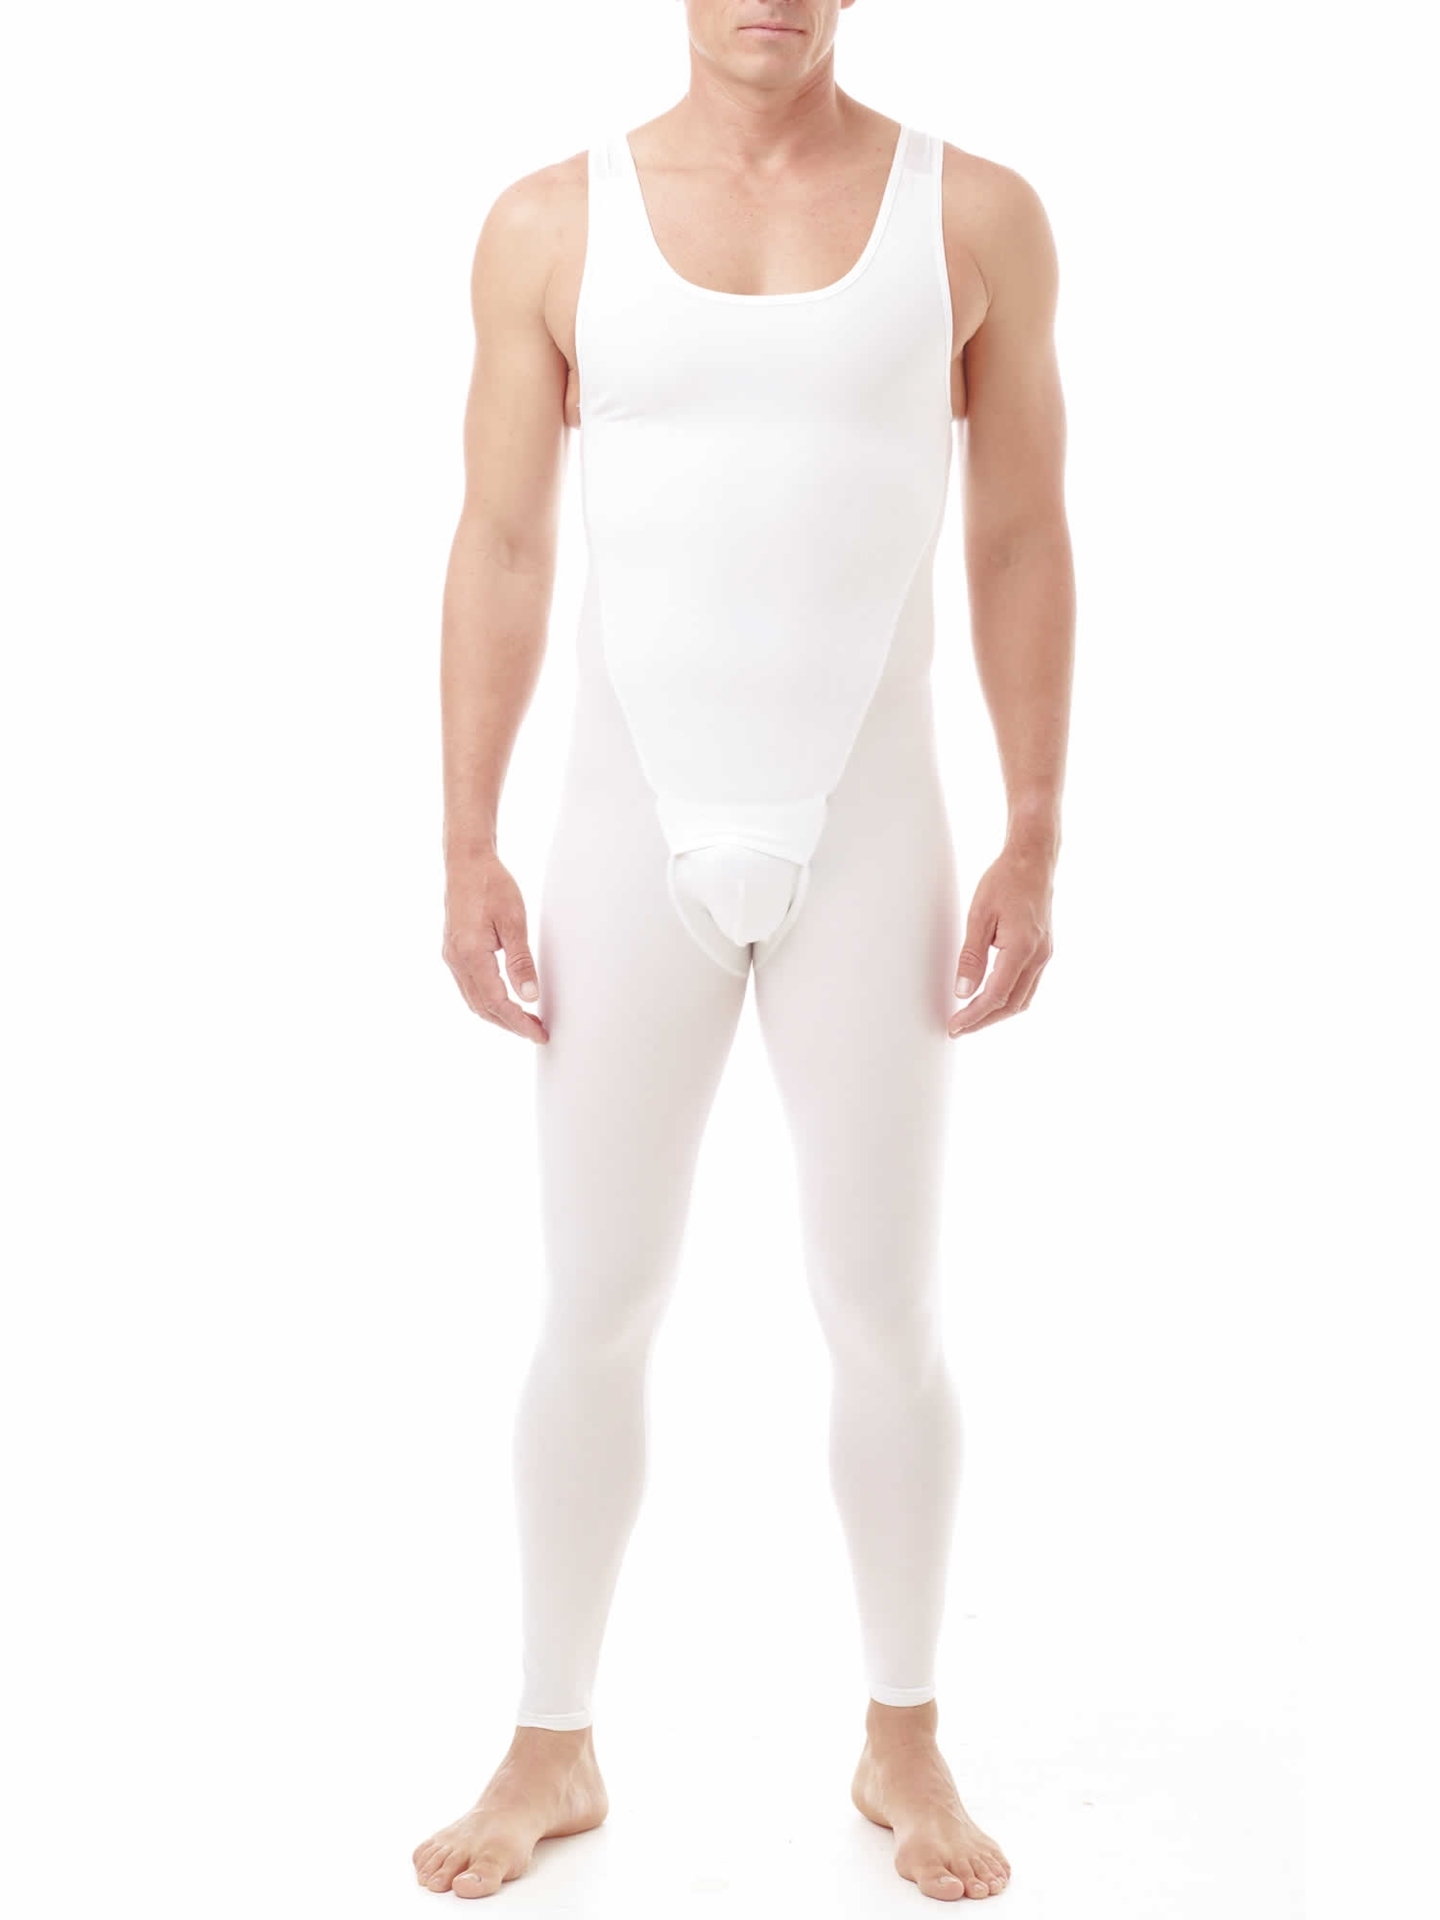 Men's Compression Bodysuit Girdle, Quality Garments